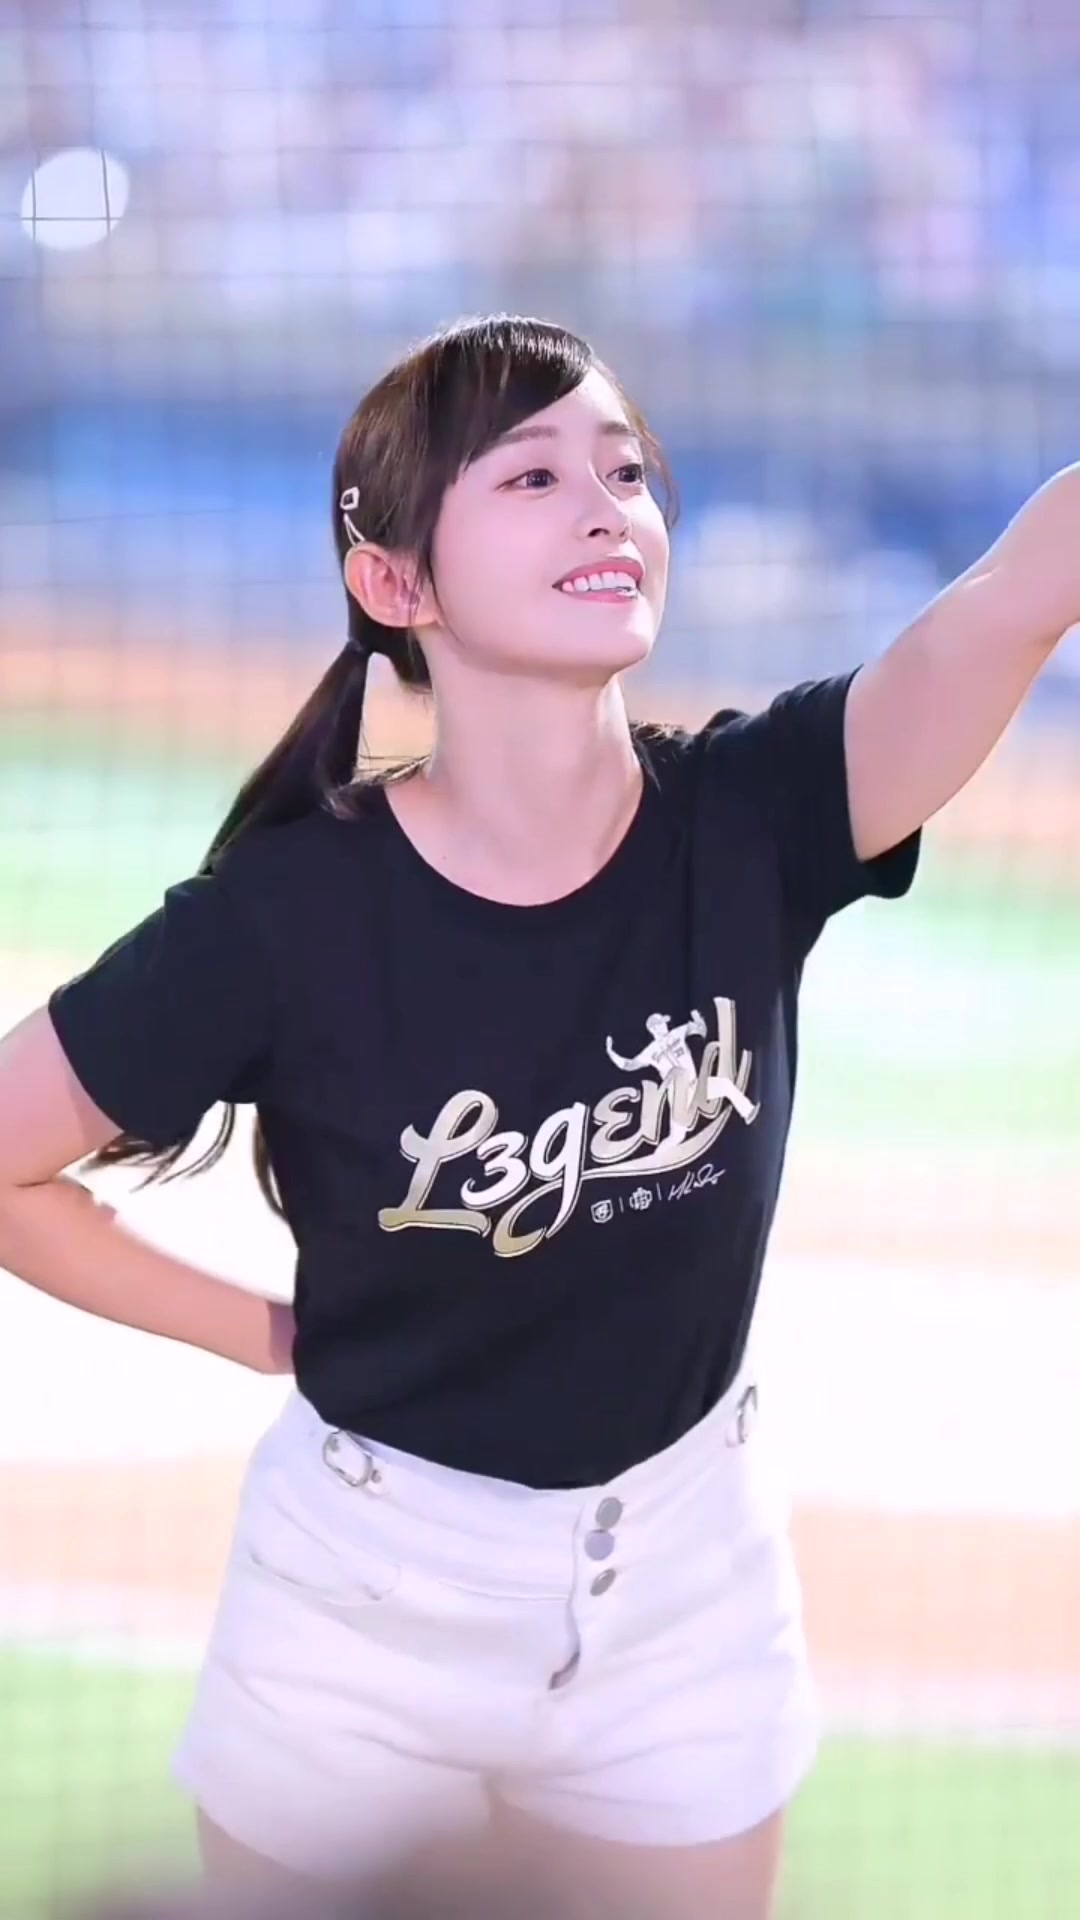 【めっちゃ乳が揺れてる美形チアリーダー】#韓国プロ野球 #可愛 #プロ野球 #キツネダンス #K-pop #韓国チア #可愛すぎる #美人が来た #可愛い女の子 #綺麗 #韓国ファッション #韓国 